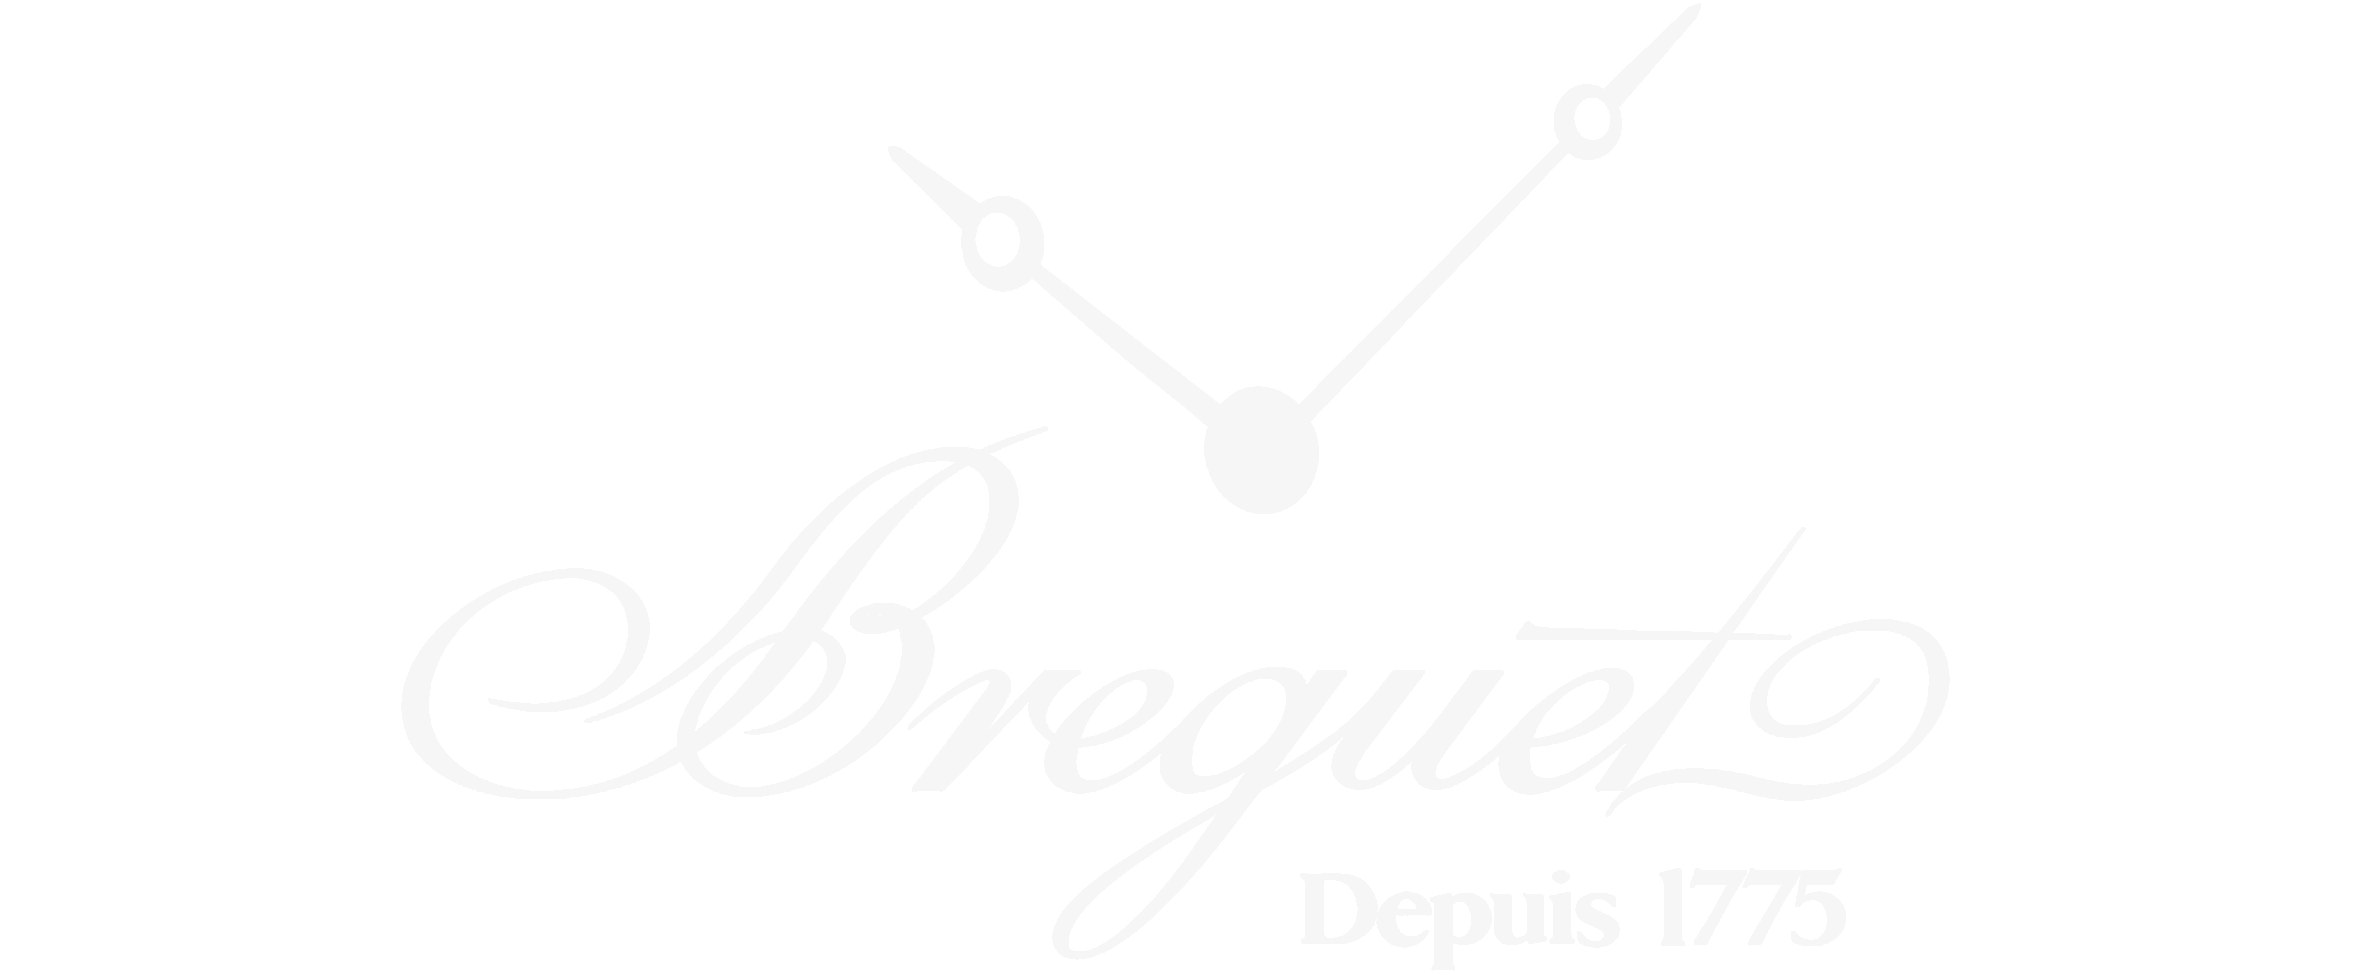 Breguet Logo - Breguet